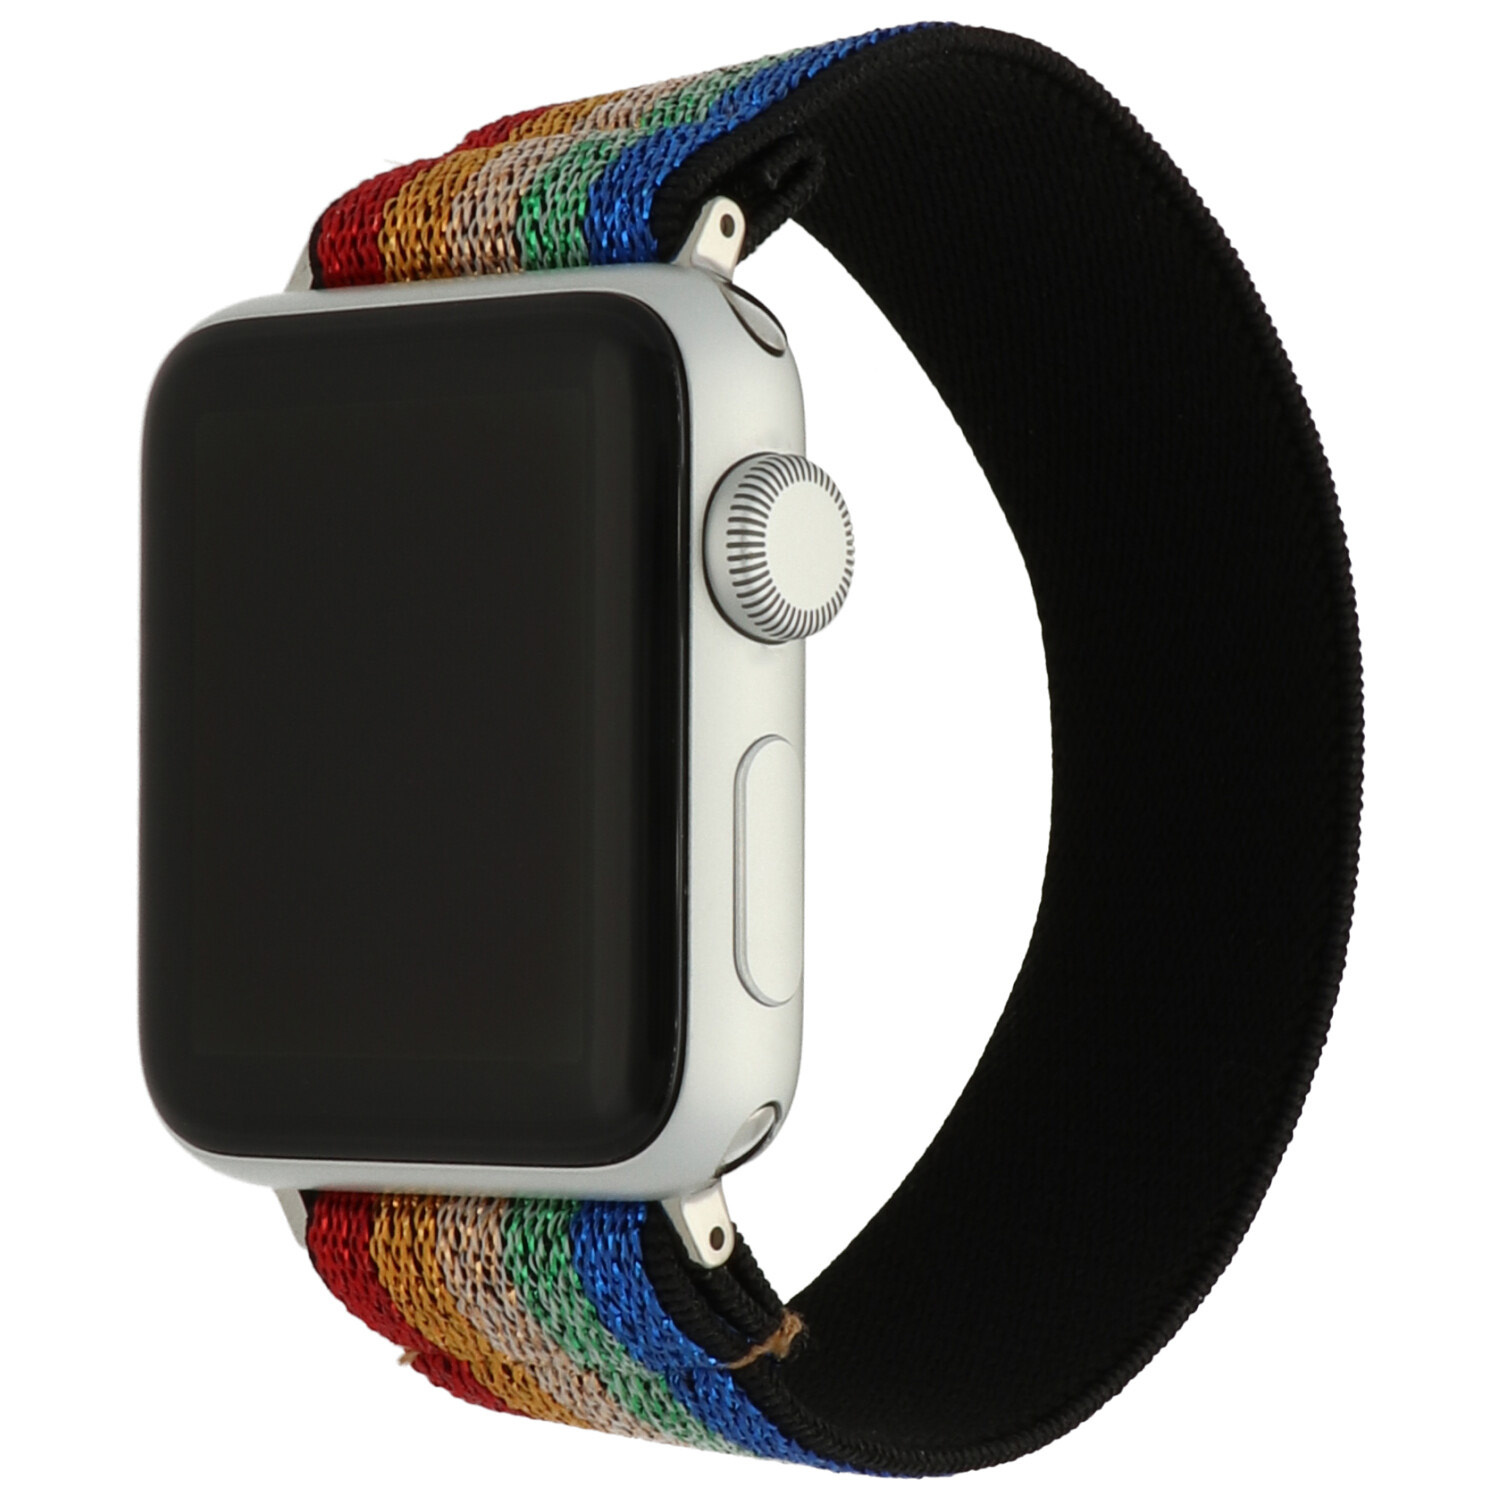 Correa de nailon para el Apple Watch - de colores